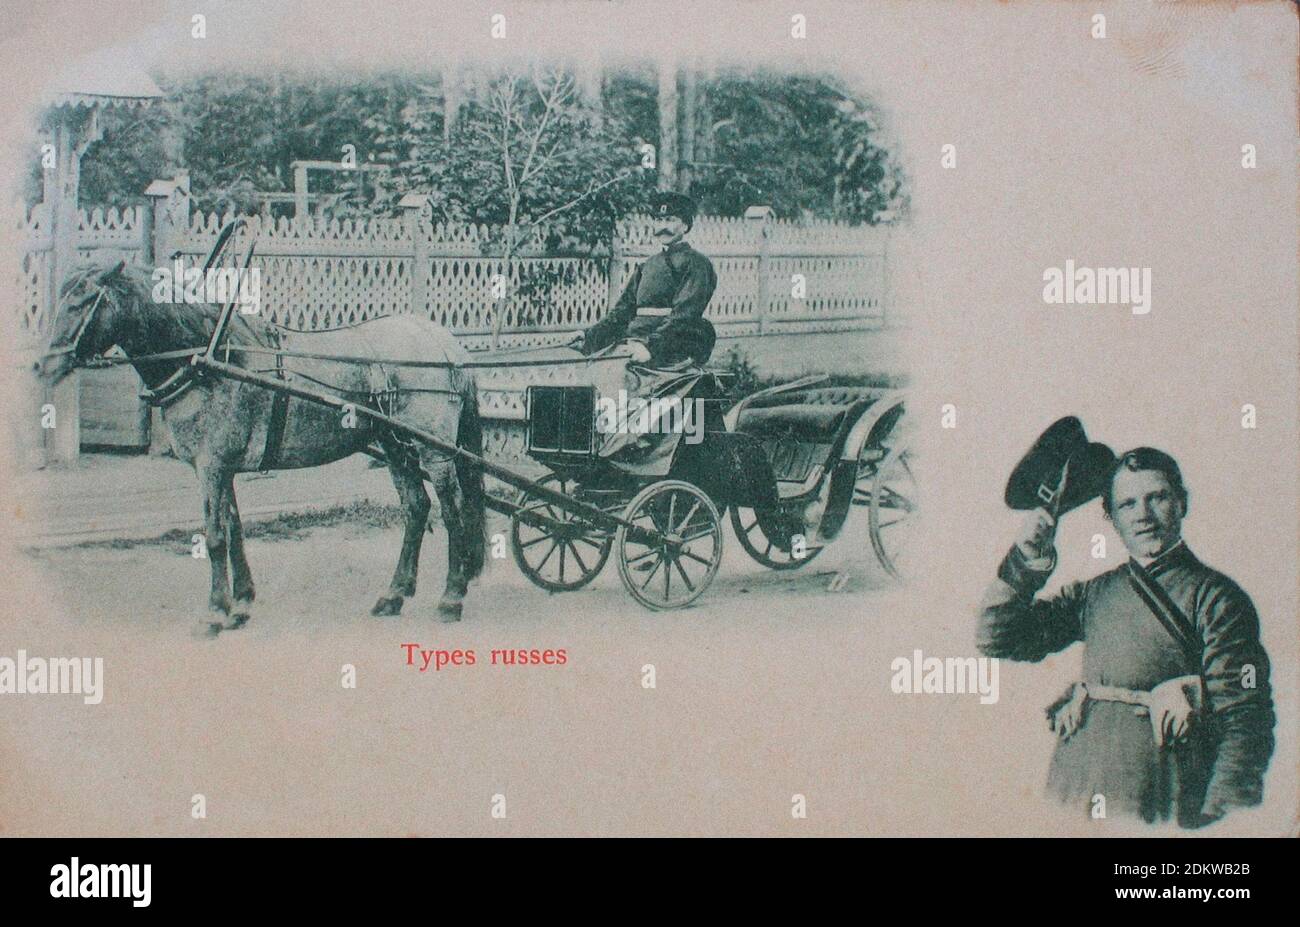 Foto retrò del cocchiere russo (cabman). Impero Russo. 1900 Foto Stock